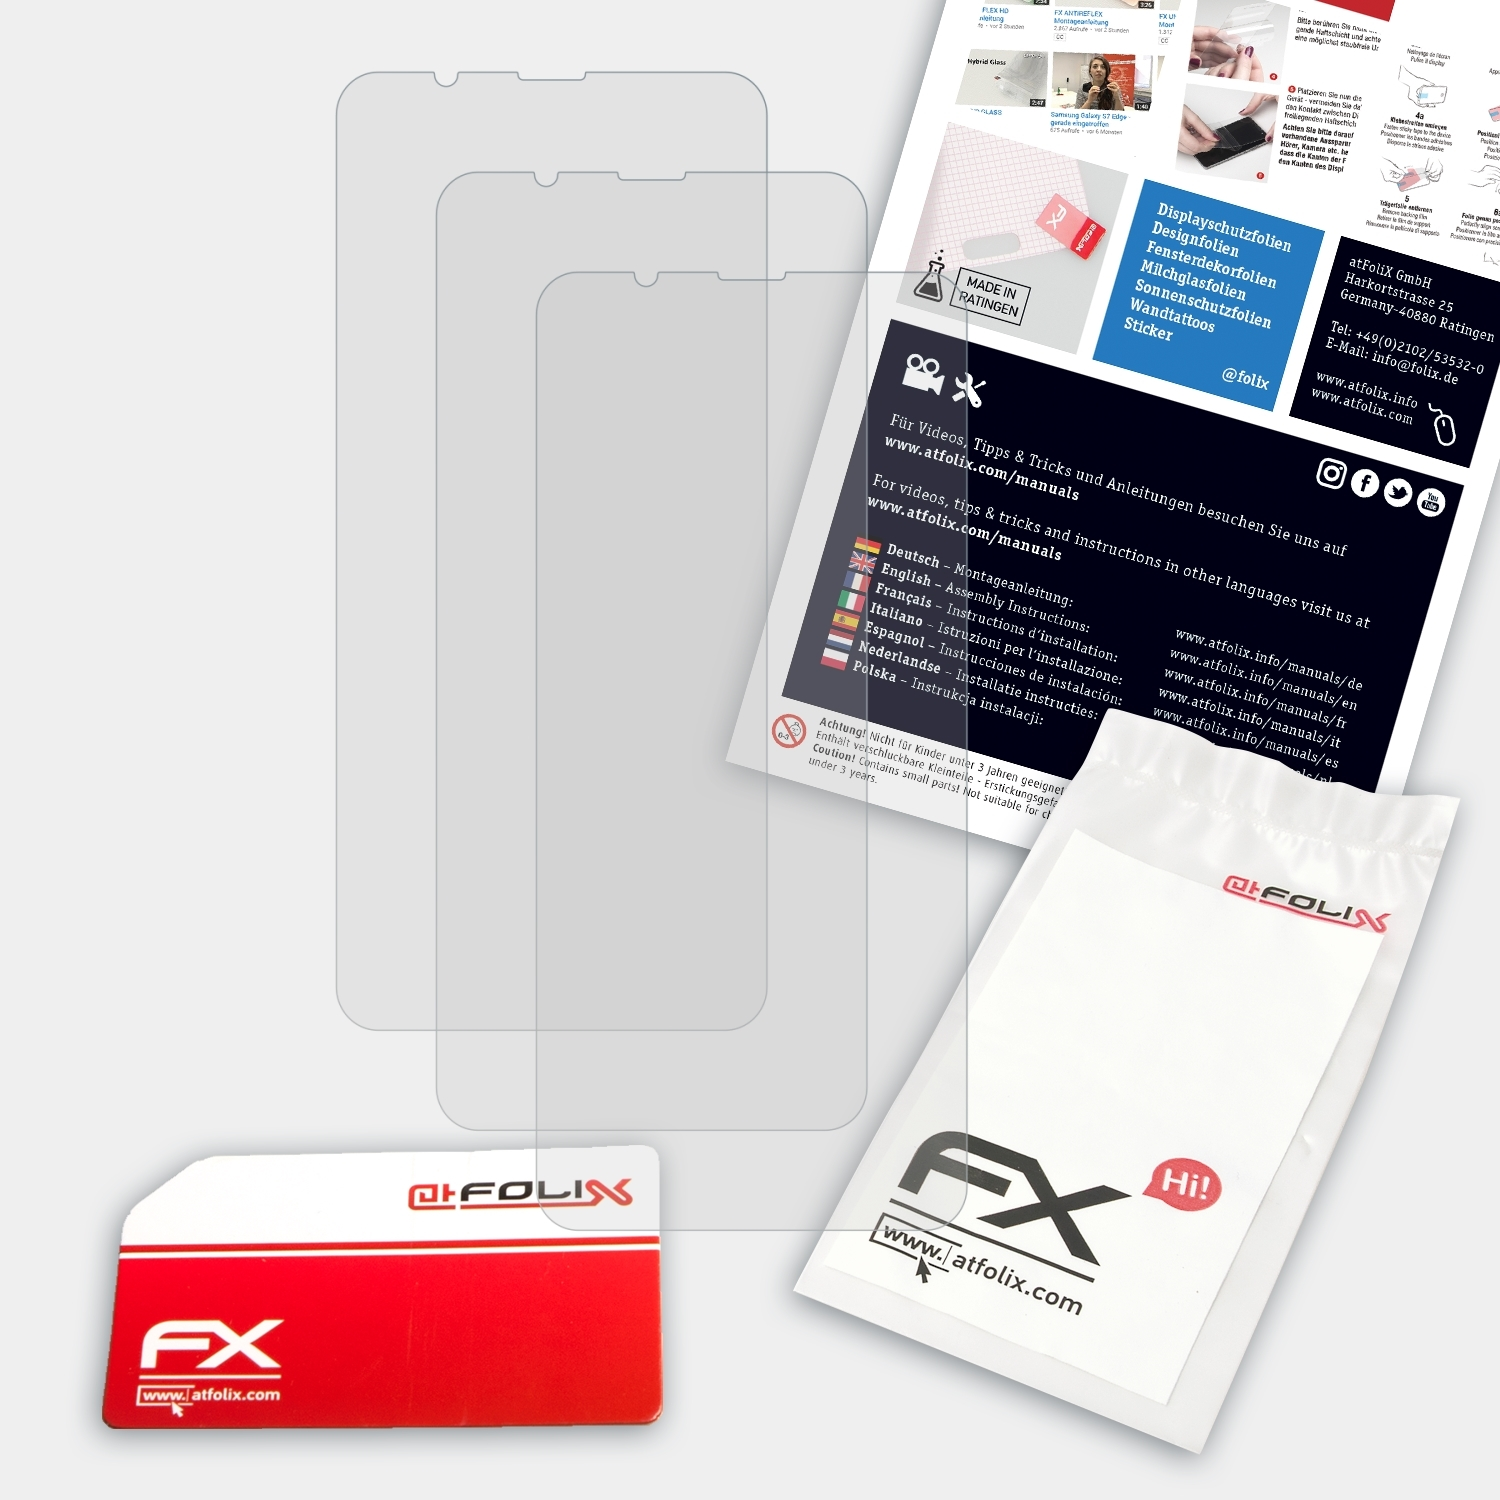 FX-Antireflex Displayschutz(für Nubia Red ZTE Magic) ATFOLIX 3x